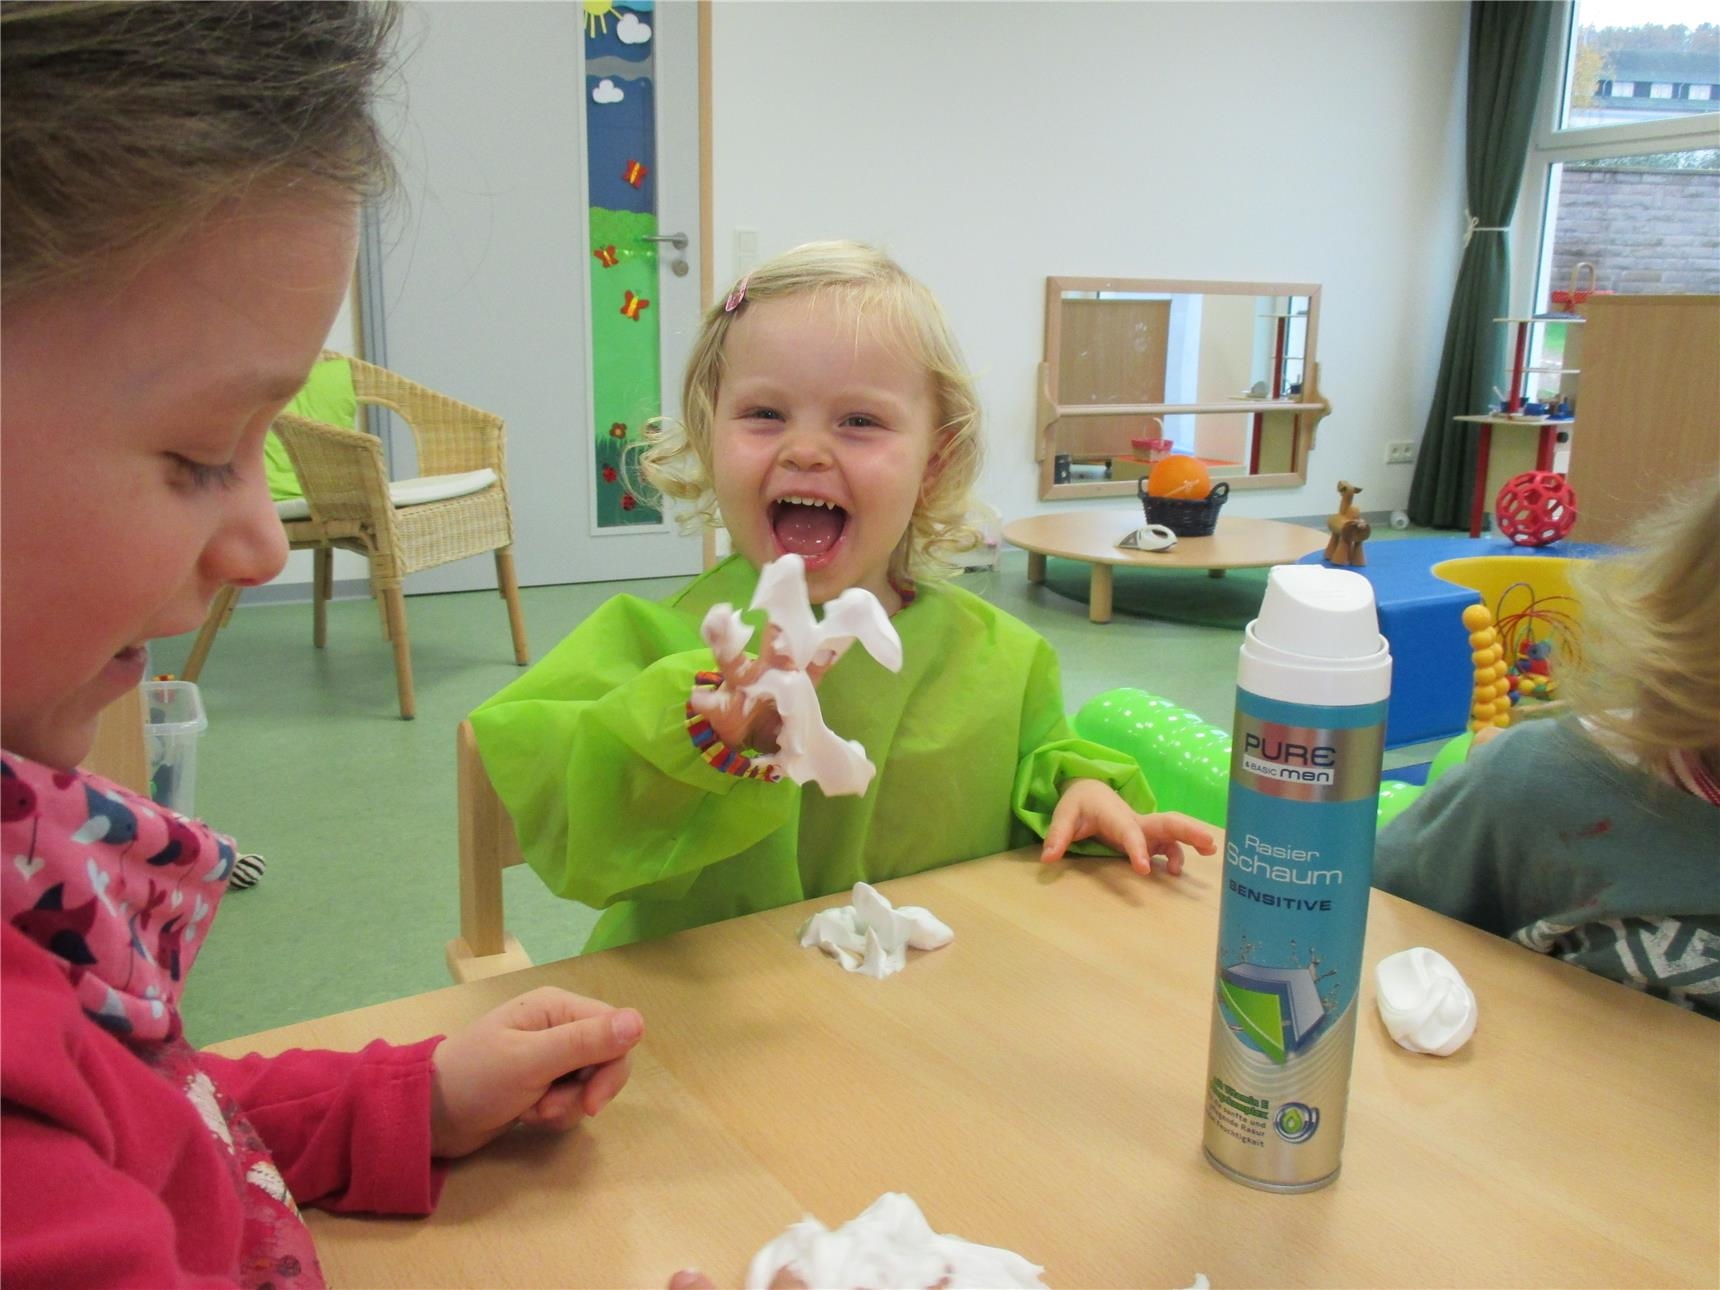 Auf einem Tisch befinden sich eine Dose Rasierschaum und drei Kleckse Rasierschaum; ein Kind hat die Finger voll Rasierschaum und lacht (Caritasverband Trier e. V.)